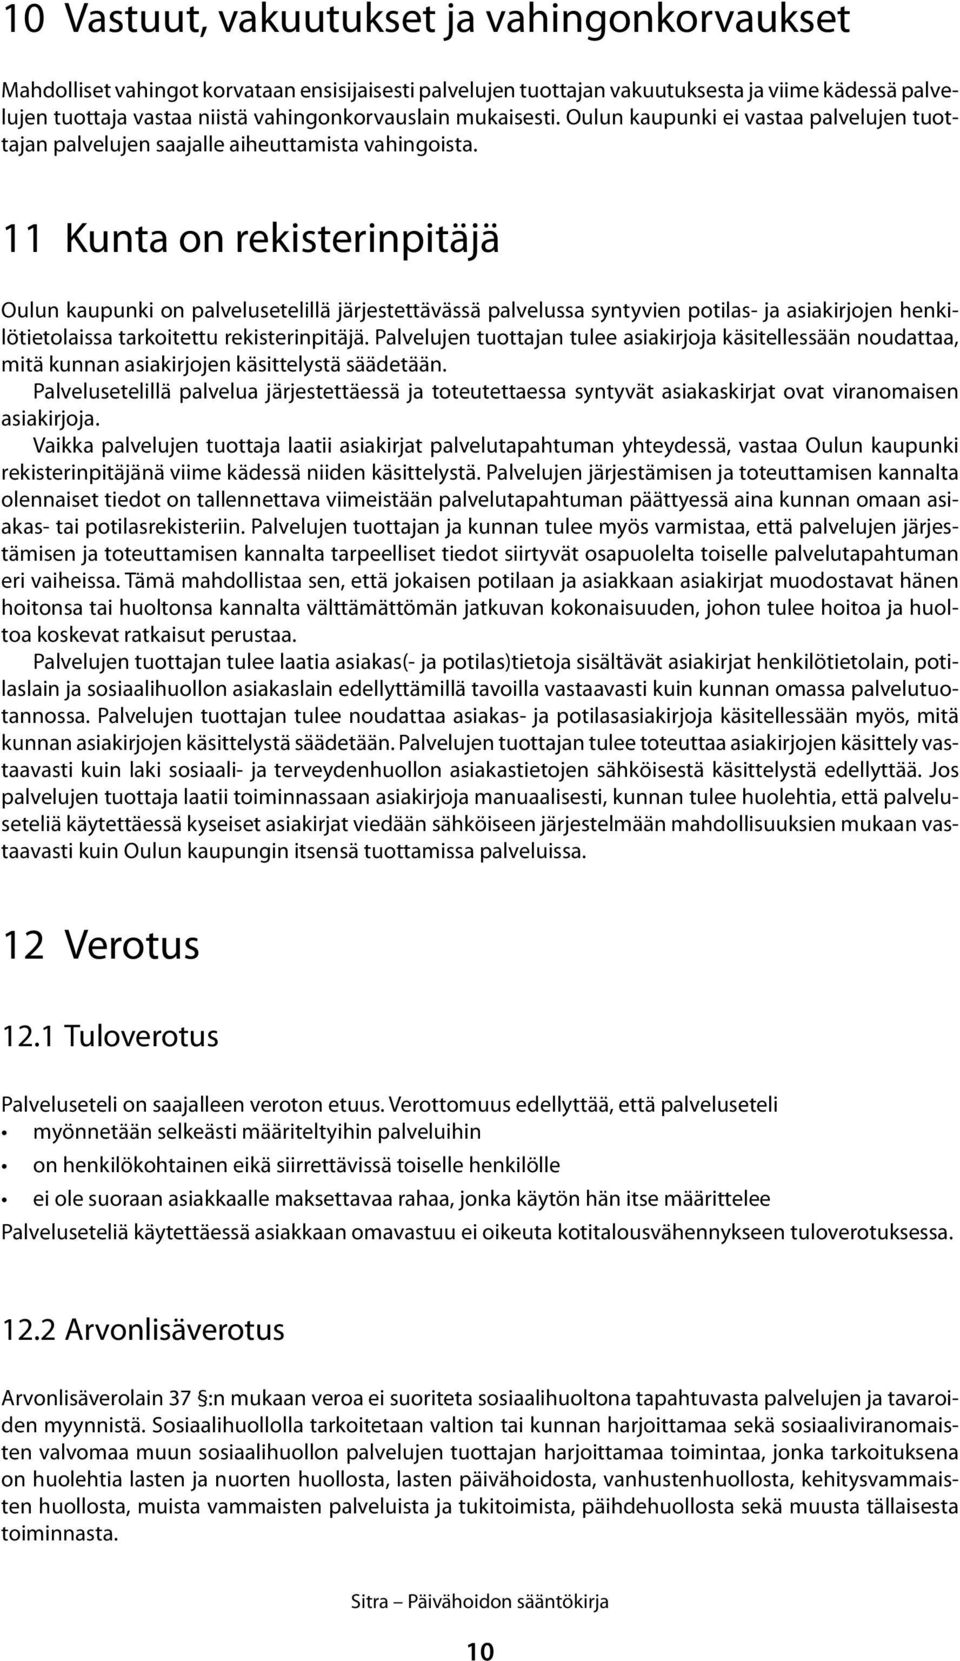 11 Kunta on rekisterinpitäjä Oulun kaupunki on palvelusetelillä järjestettävässä palvelussa syntyvien potilas- ja asiakirjojen henkilötietolaissa tarkoitettu rekisterinpitäjä.